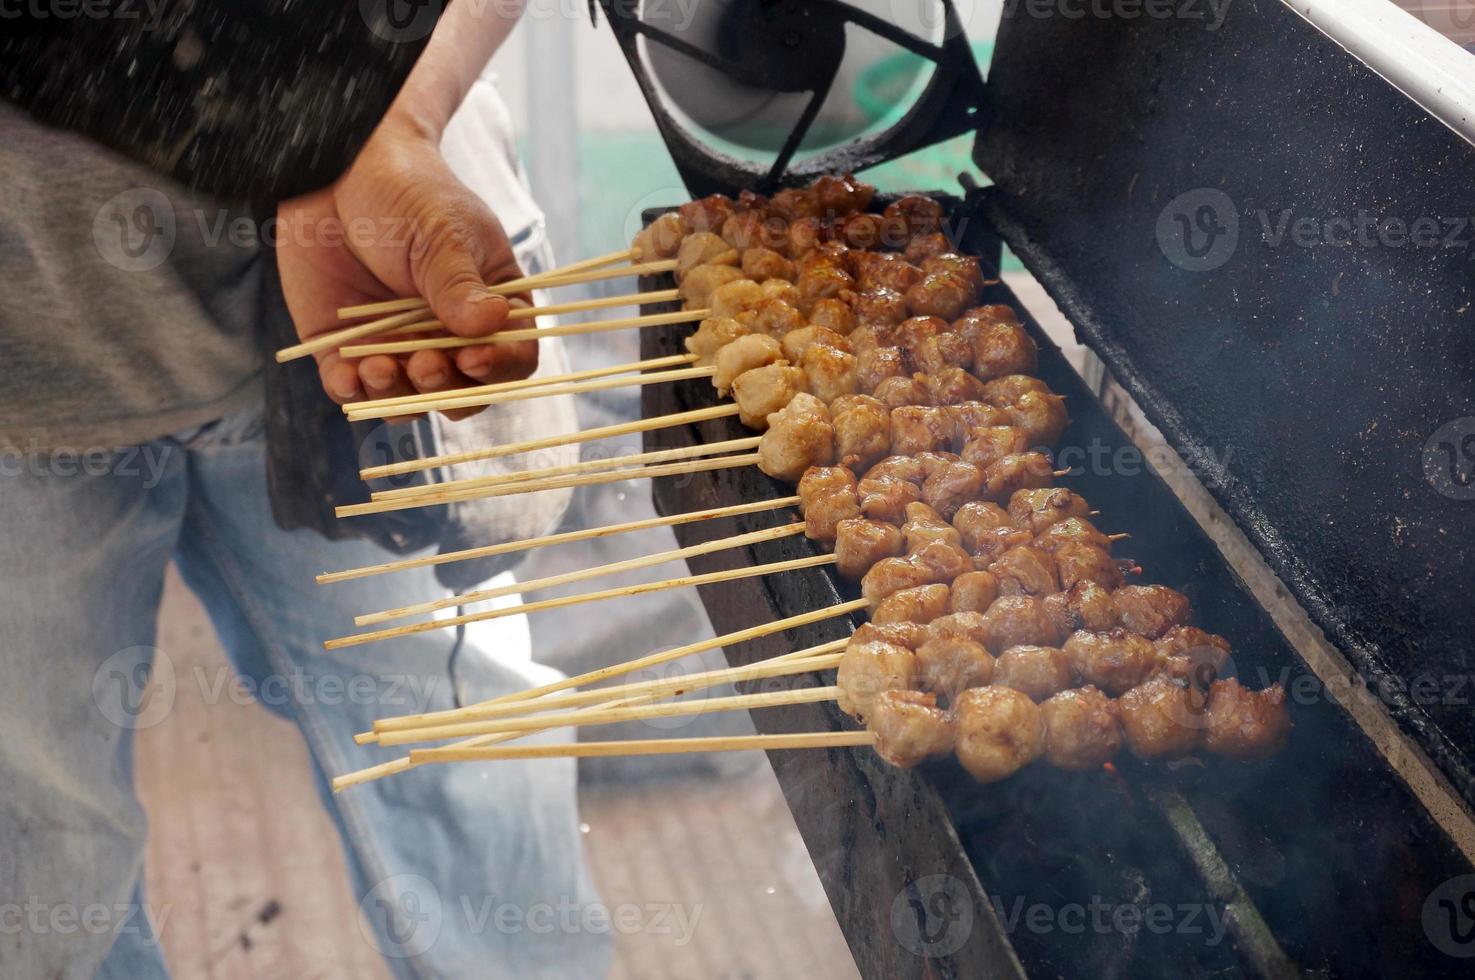 gegrild gehaktballen in spiesjes, bakso pentol bakar met soja saus foto